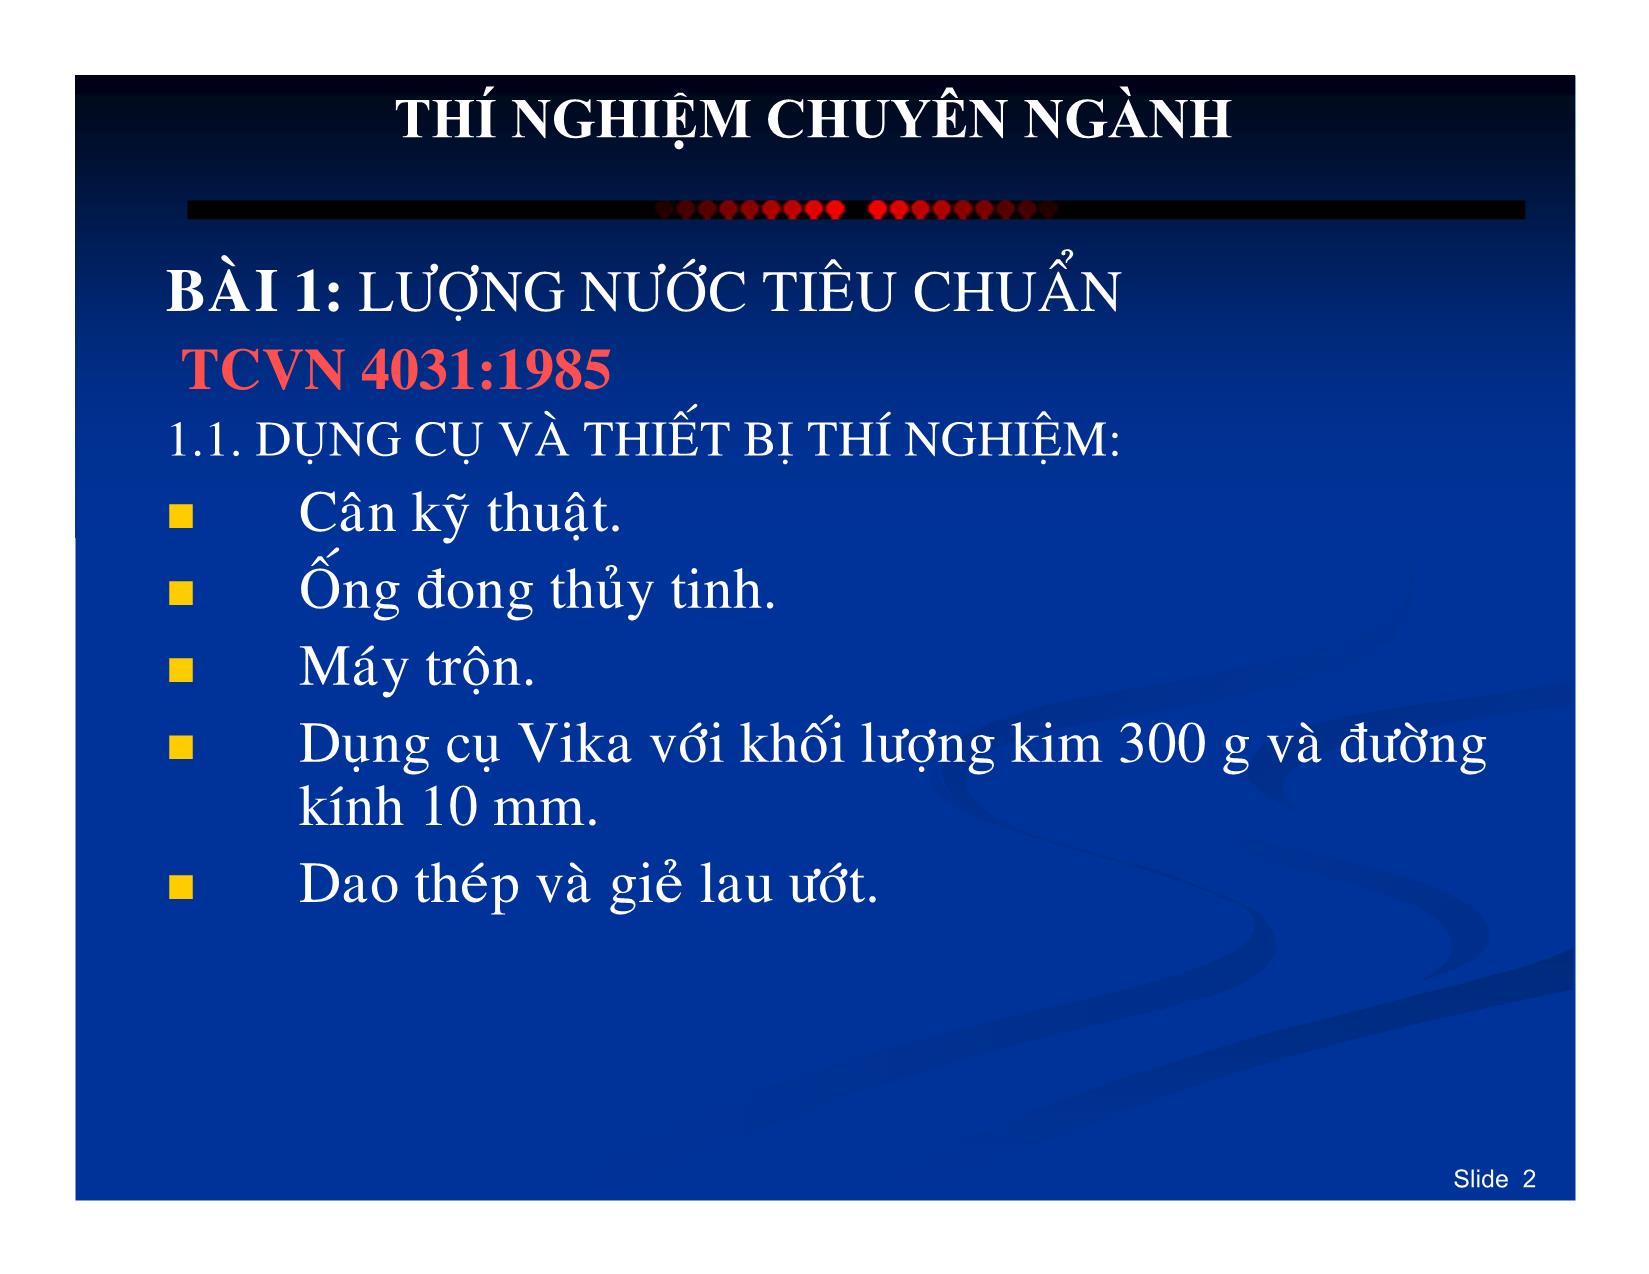 Bài giảng Thí nghiệm chuyên ngành - Nguyễn Hòa Dương trang 2